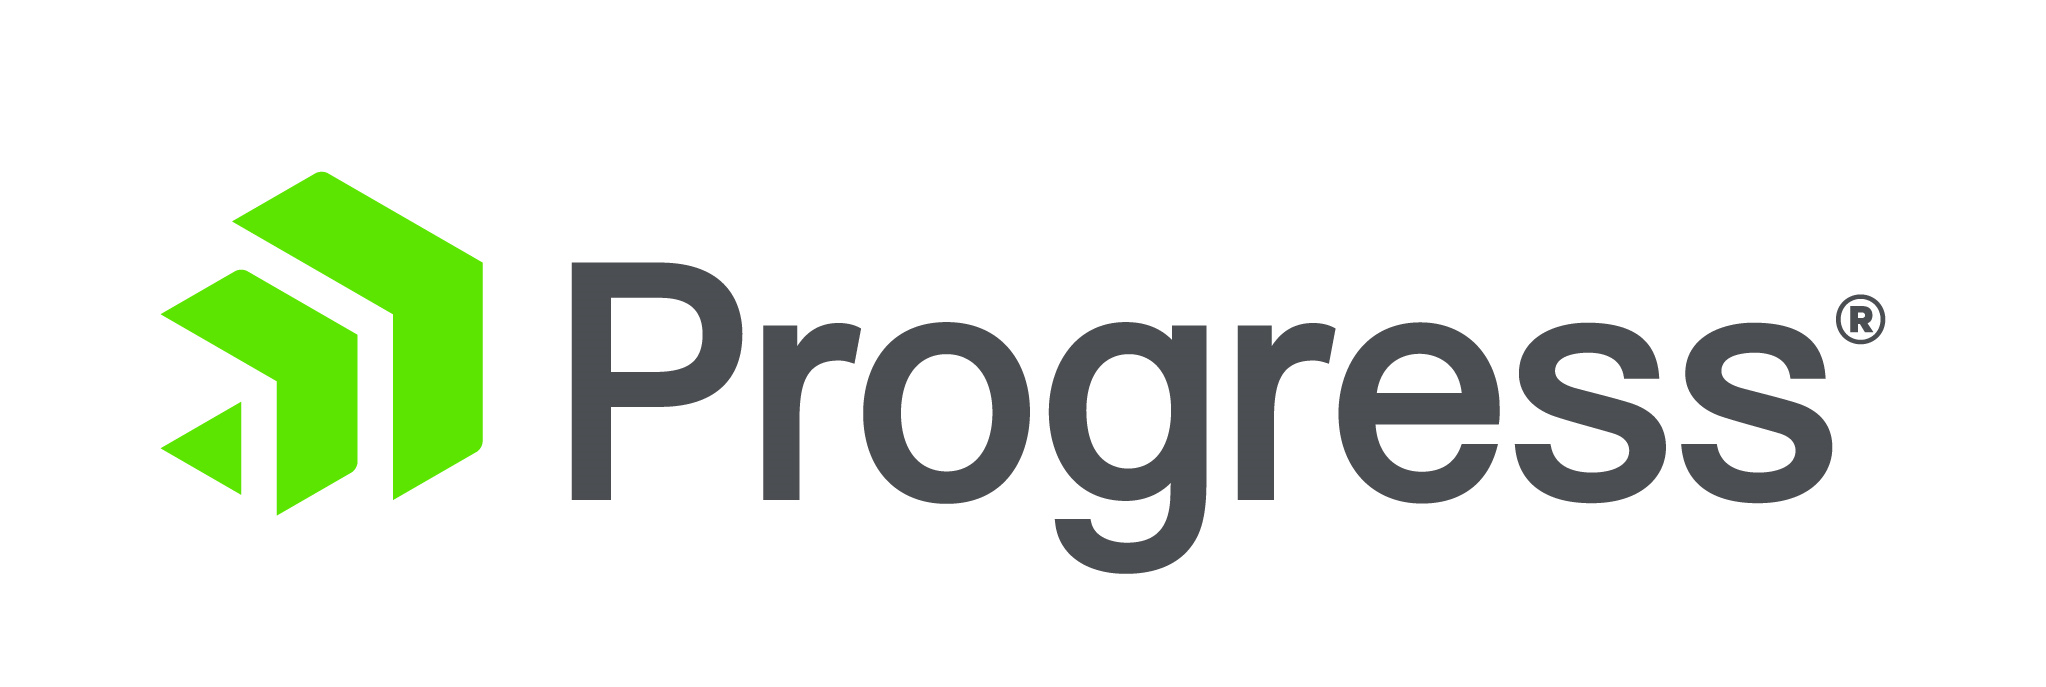 Progress Company Logo